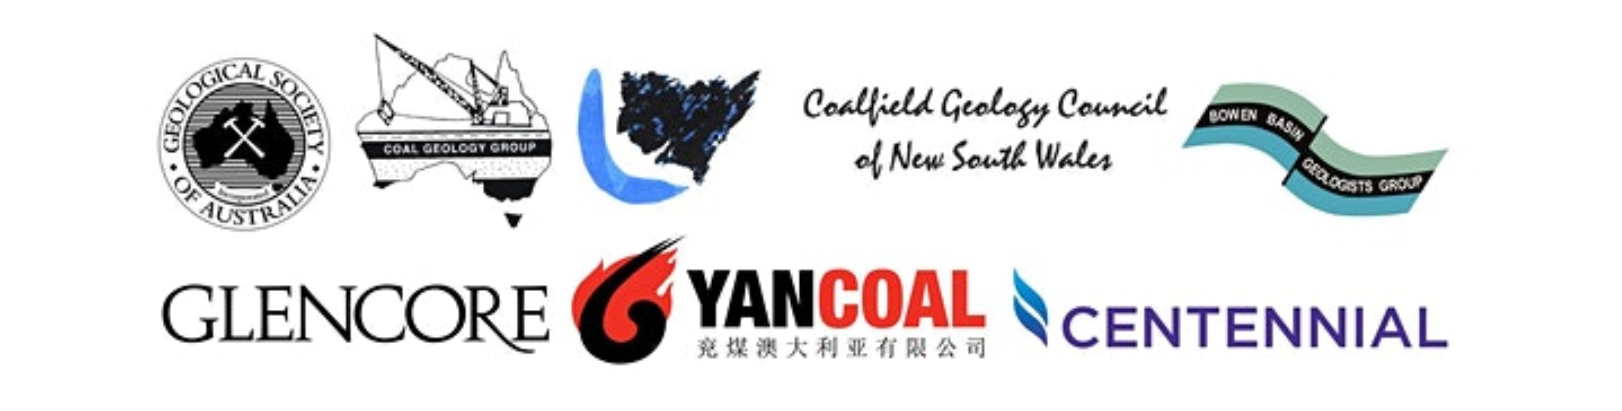 Coal logos.png